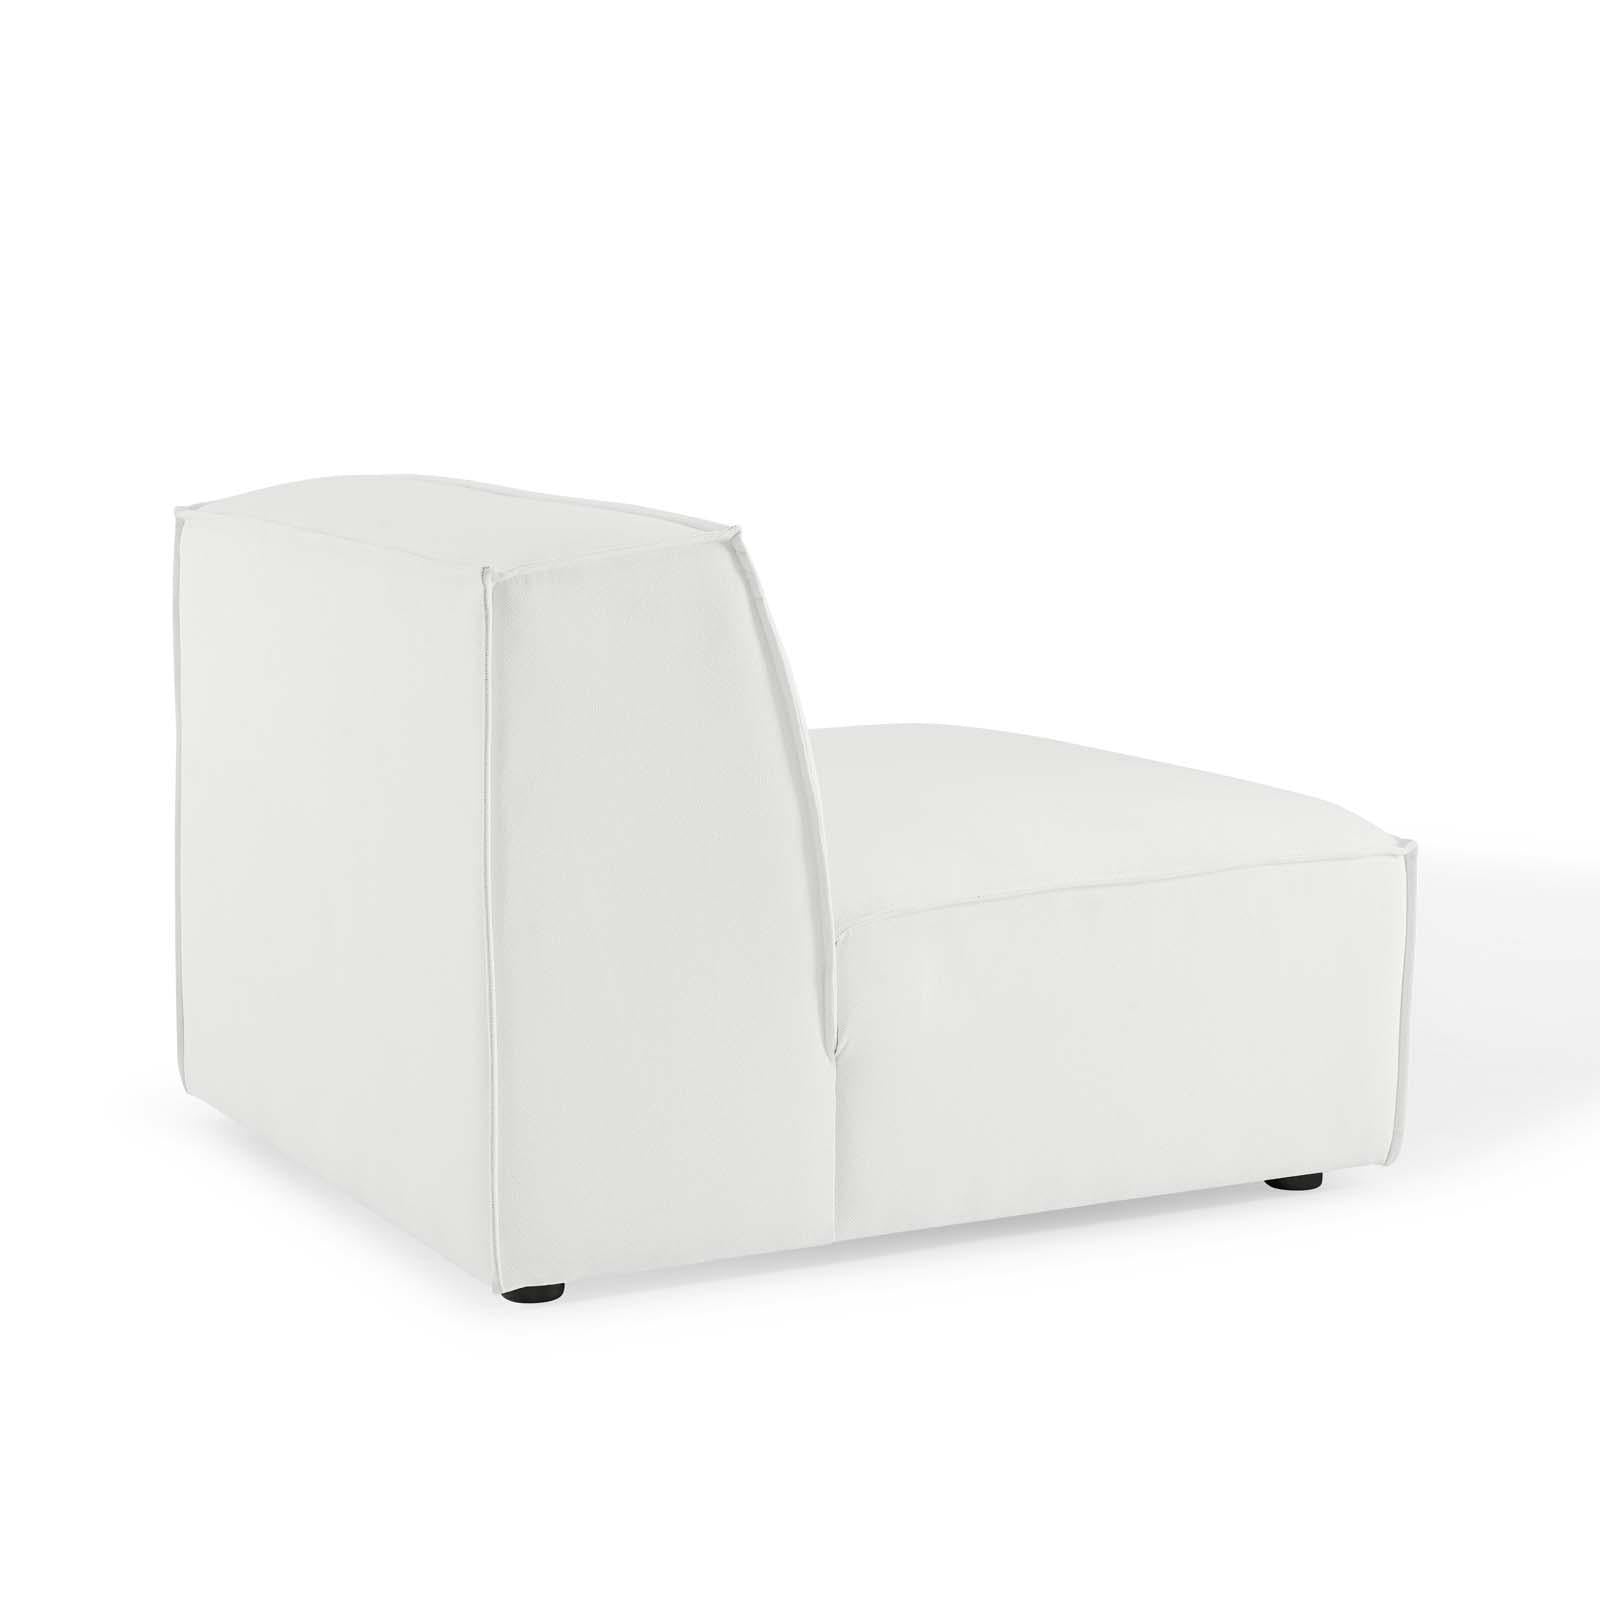 Modway Furniture Modern Restore 4-Piece Sectional Sofa - EEI-4114